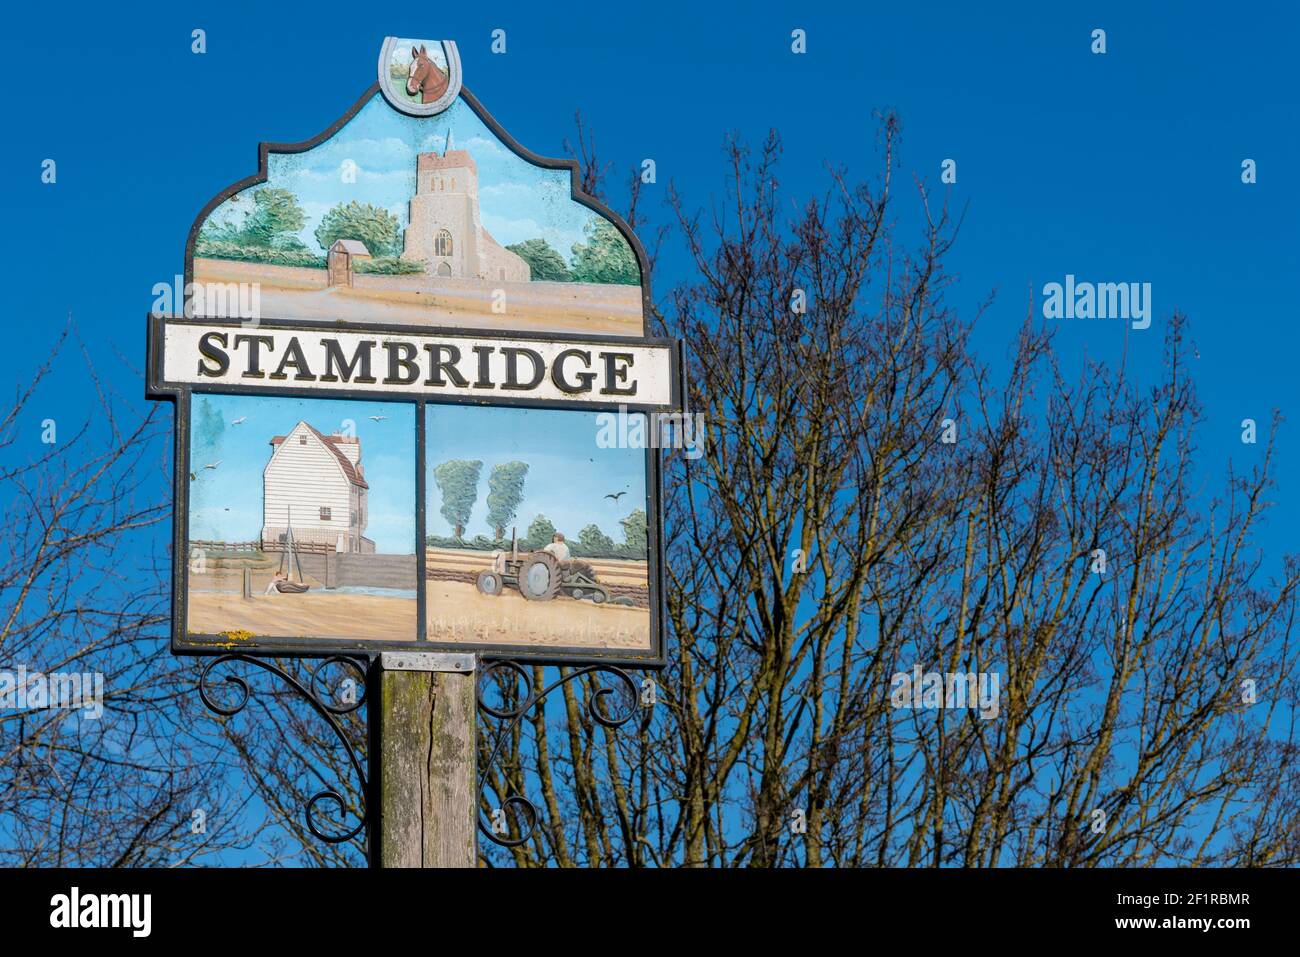 Segno del villaggio di Stambridge con immagini di caratteristiche locali, tra cui la chiesa di Santa Maria e tutti i Santi, trattore che coltivano un campo e un mulino Foto Stock